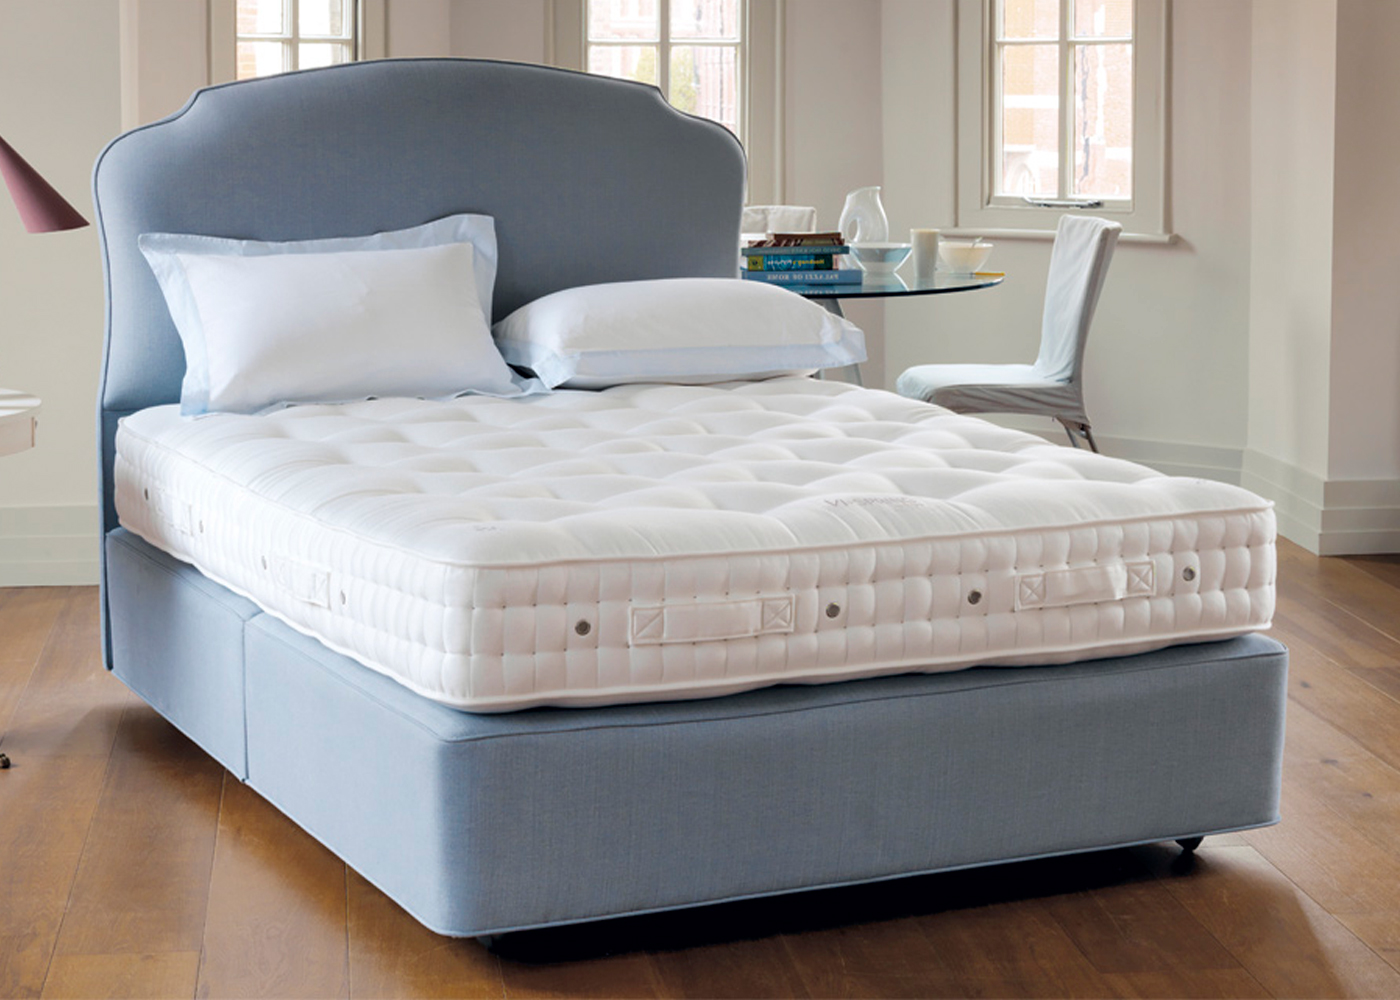 ViSpring Superb Bed Midfurn Furniture Superstore